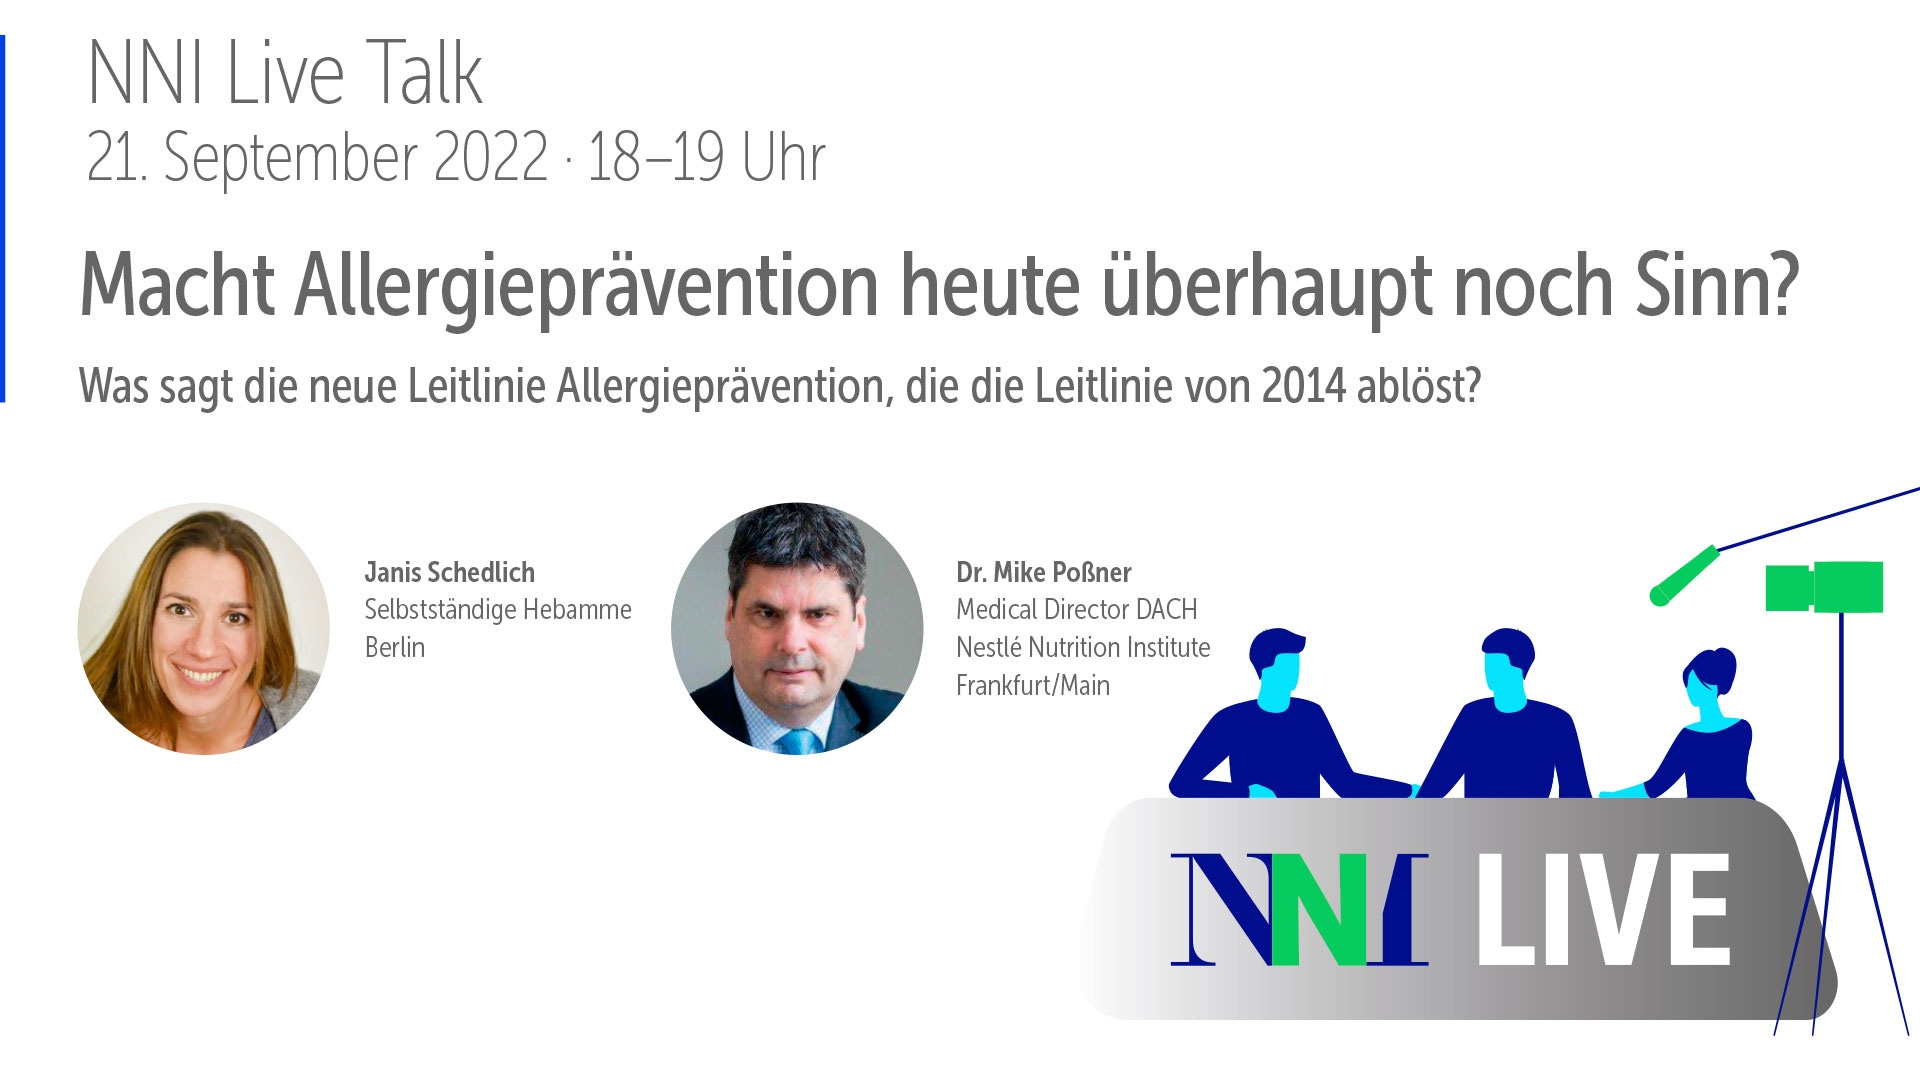 NNI Live Talk: Macht Allergieprävention heute überhaupt noch Sinn?